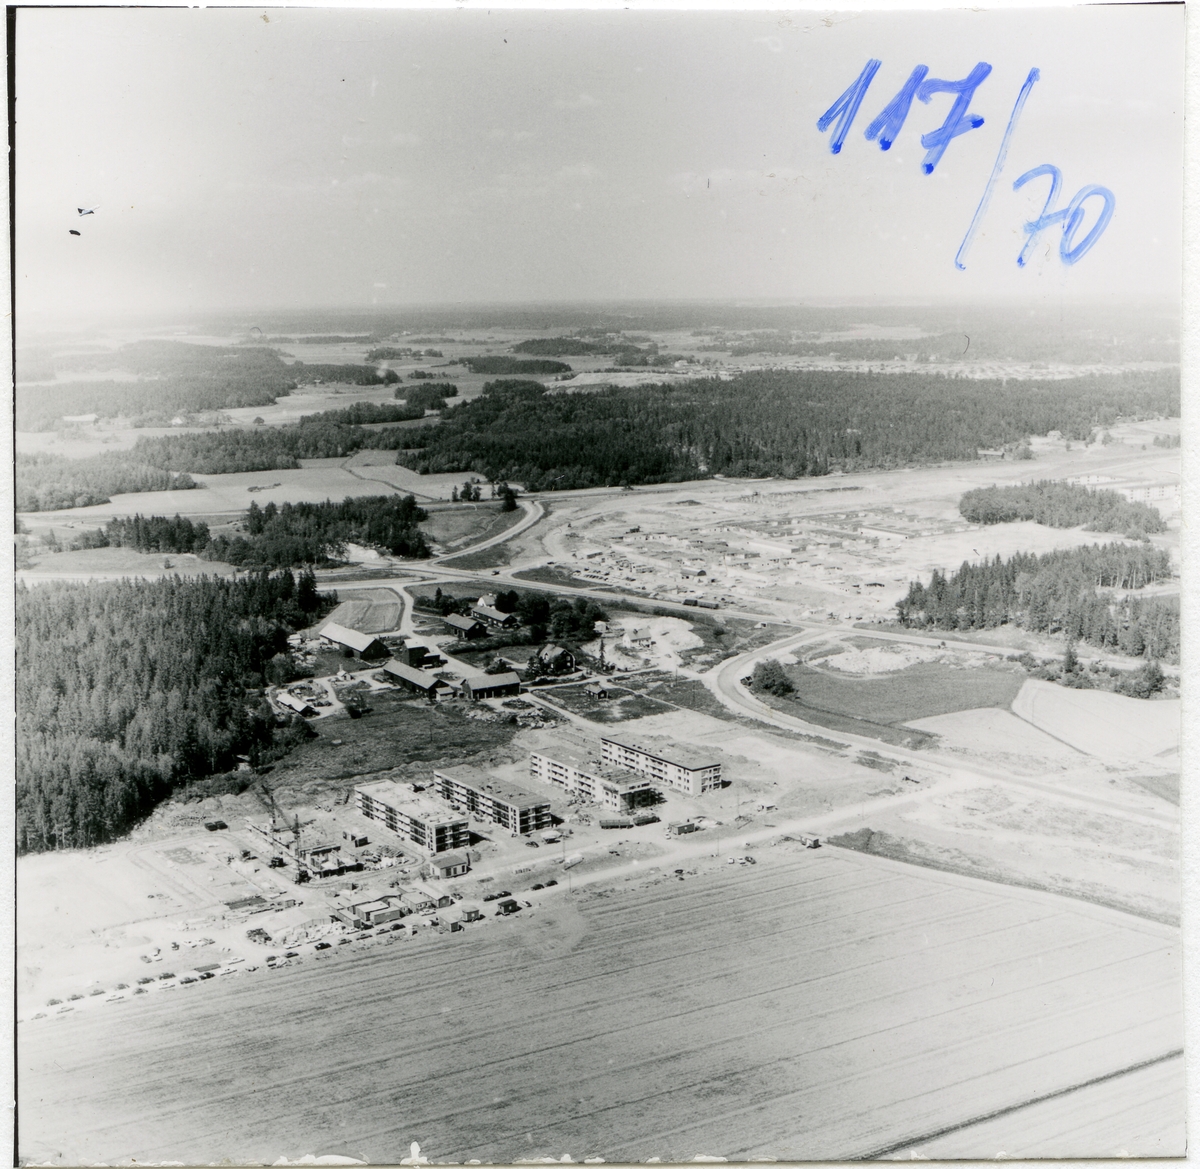 Västerås, Bäckby.
Bäckby gård från söder. 1970.